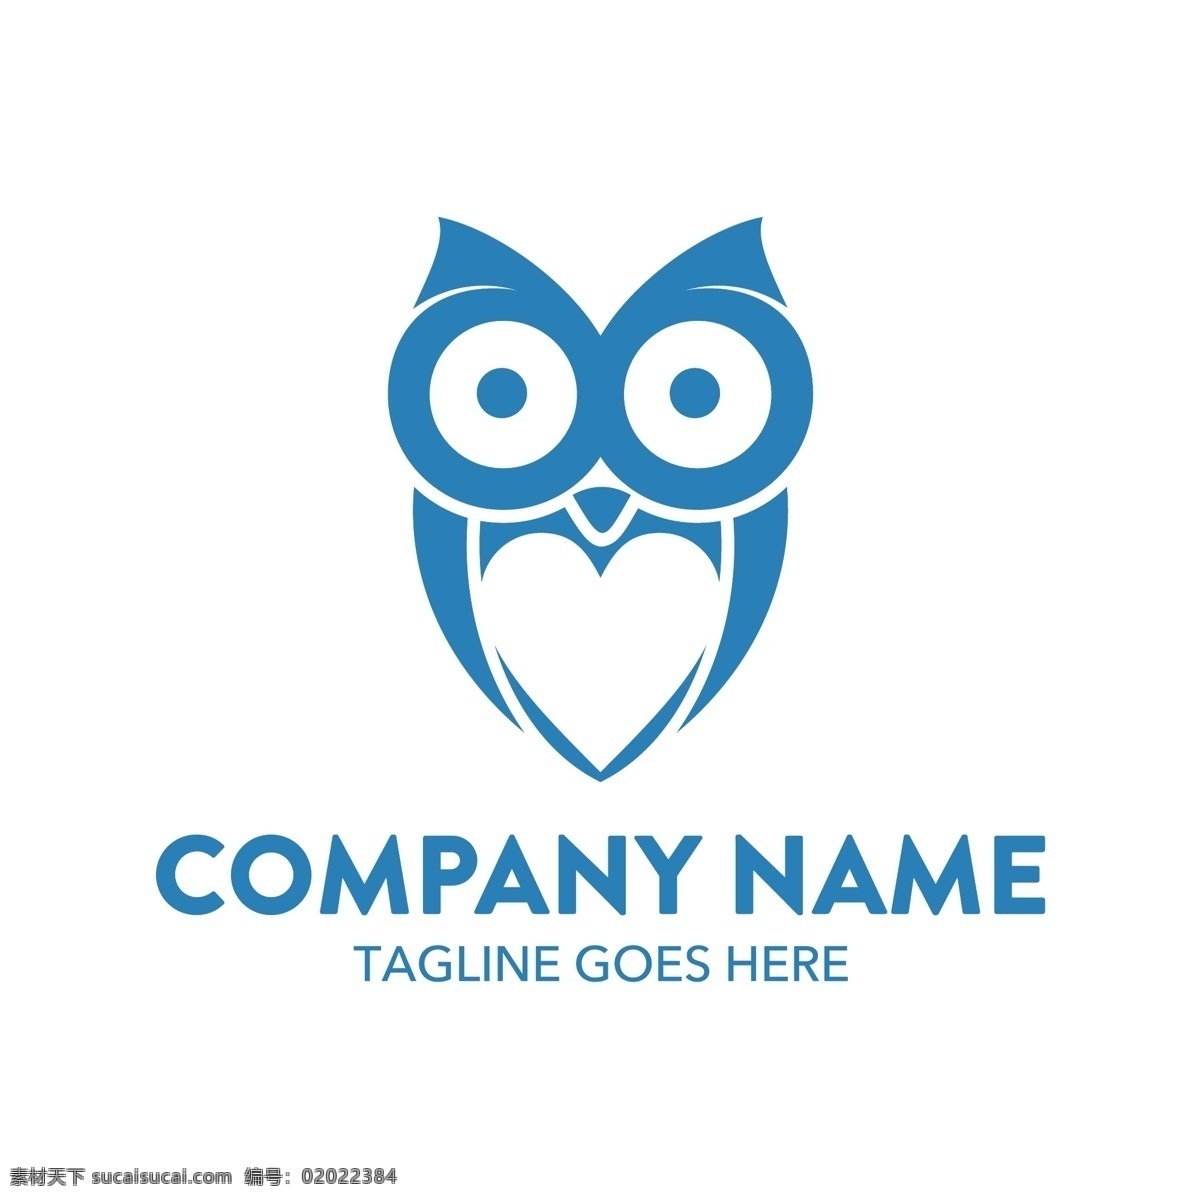 可爱 心形 猫头鹰 logo 矢量 爱心 图形 图标 标志 蓝色logo 动物logo 抽象logo 创意logo 品牌logo logo设计 logo模板